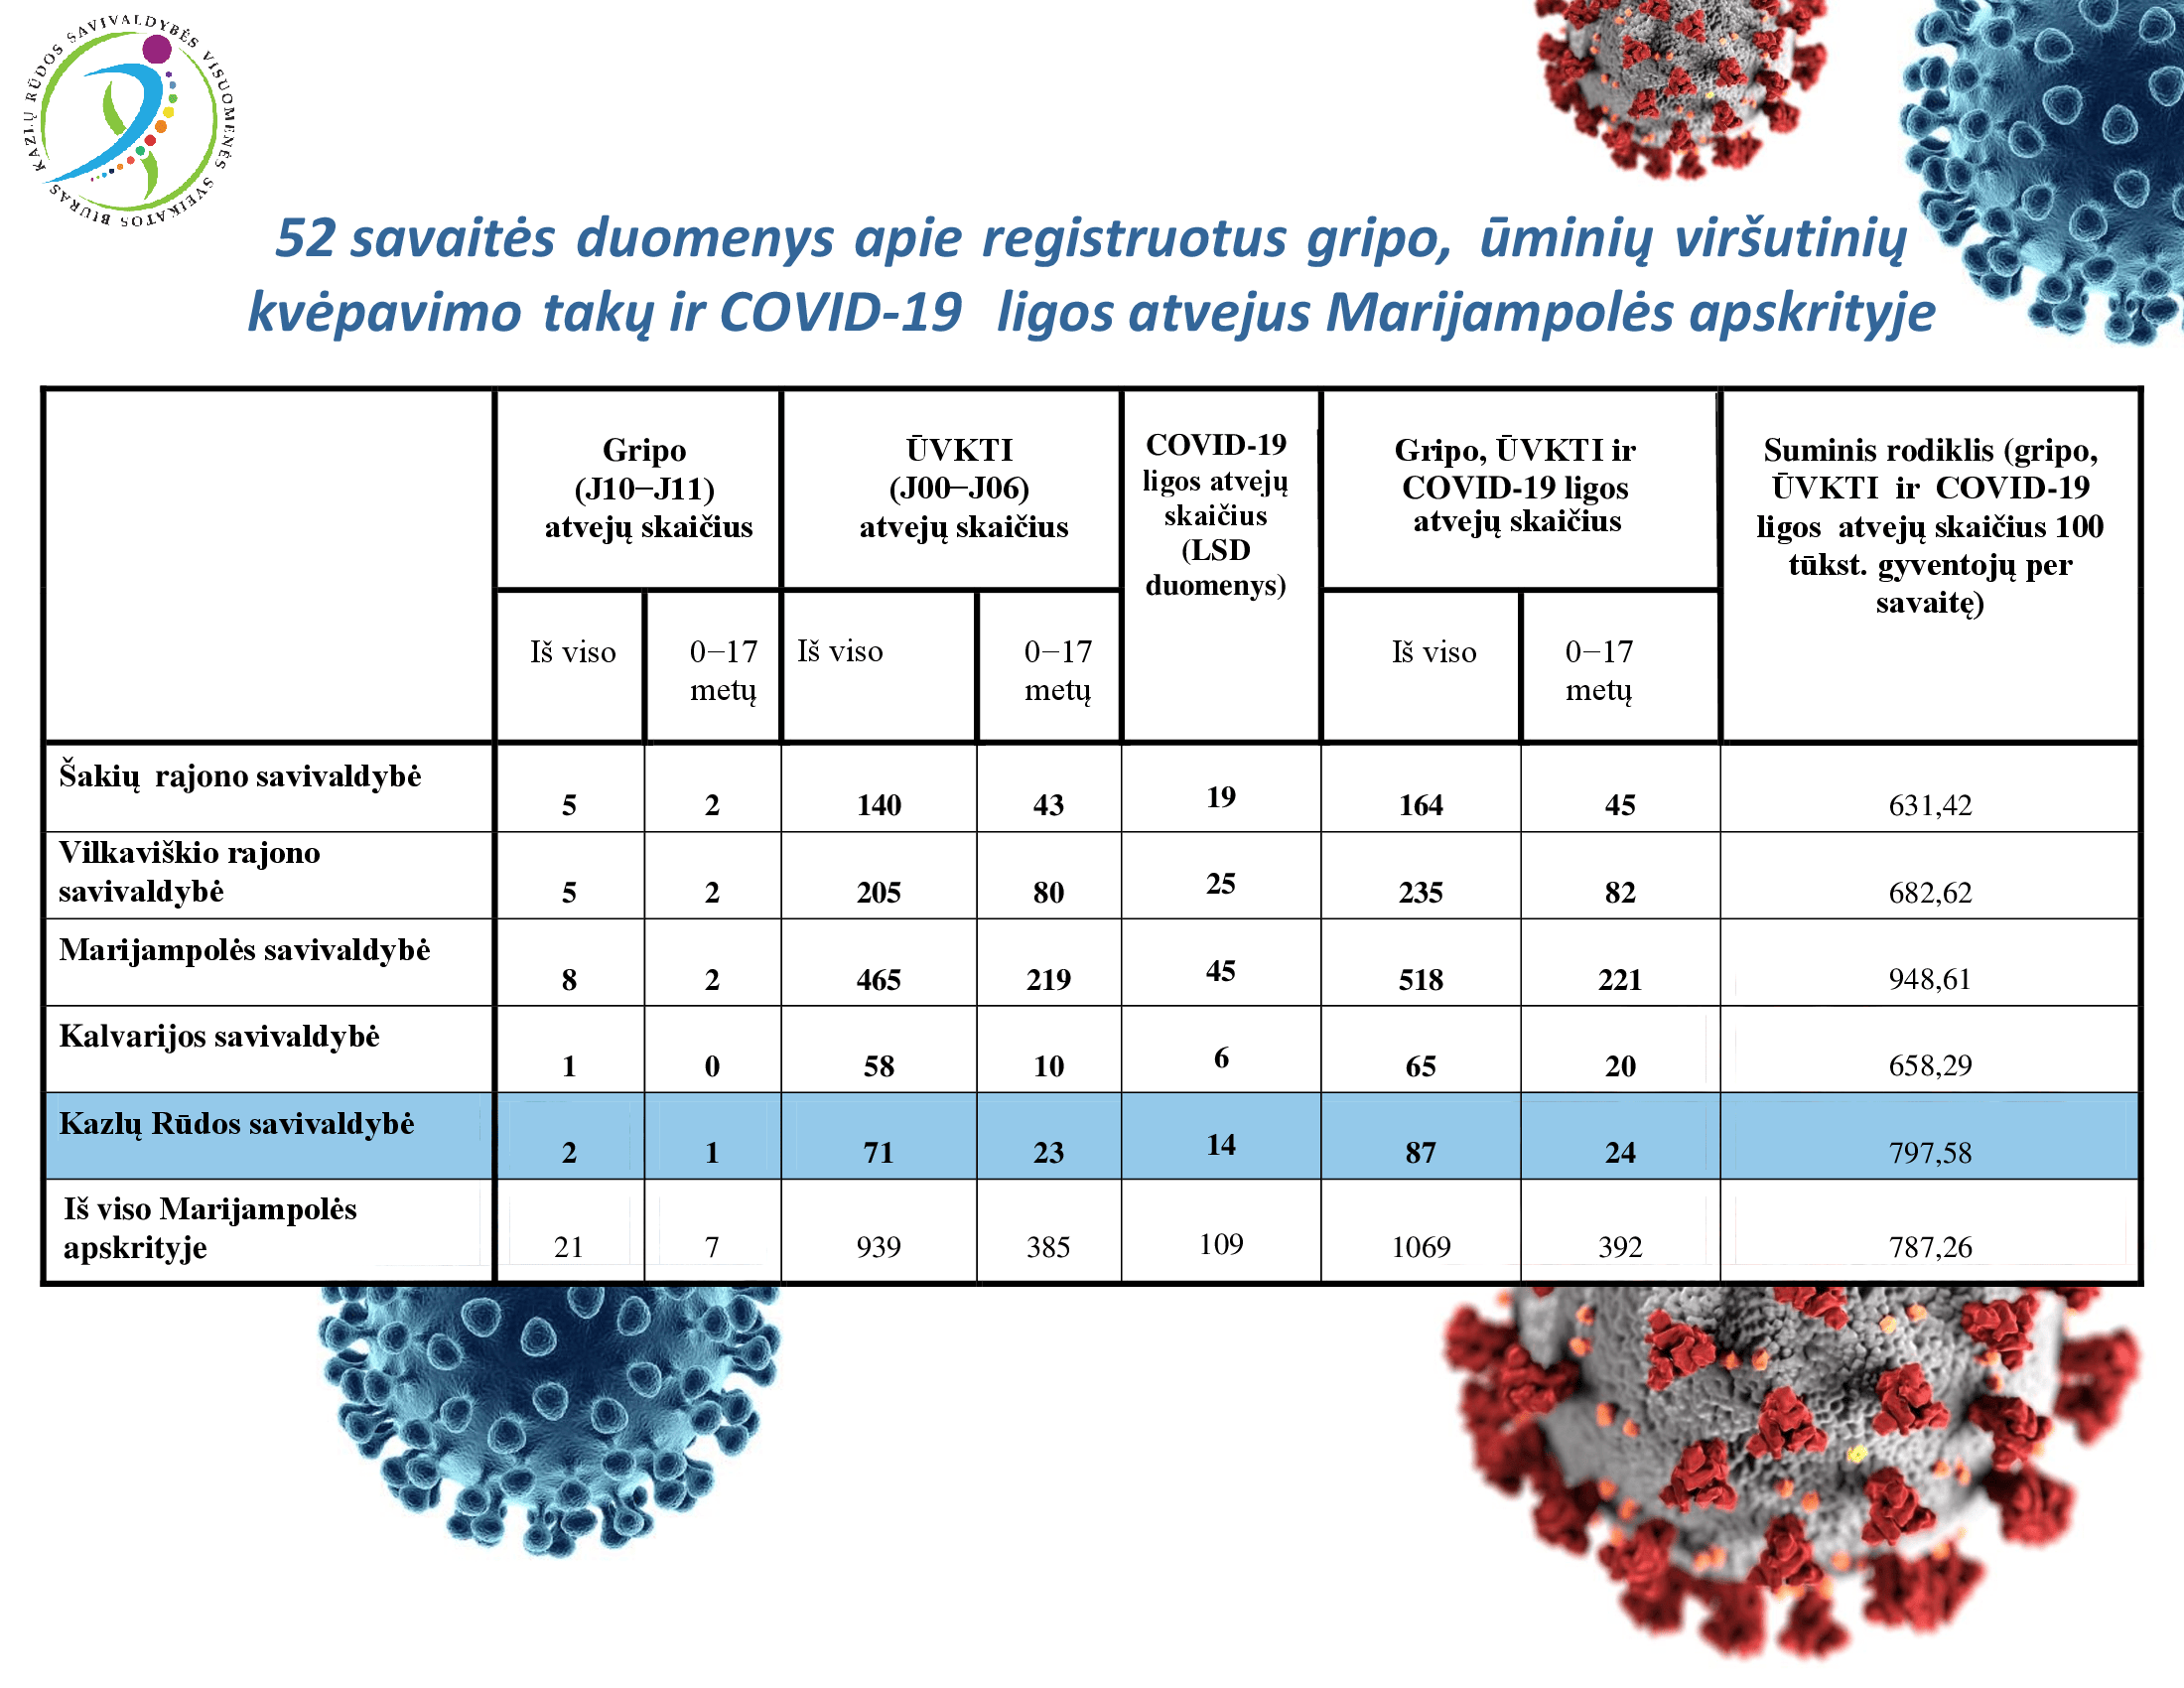 52-savaites-duomenys-apie-registruotus-gripo,-uminiu-virsutiniu-kvepavimo-taku-ir-covid-19-ligos-atvejus-marijampoles-apskrityje-